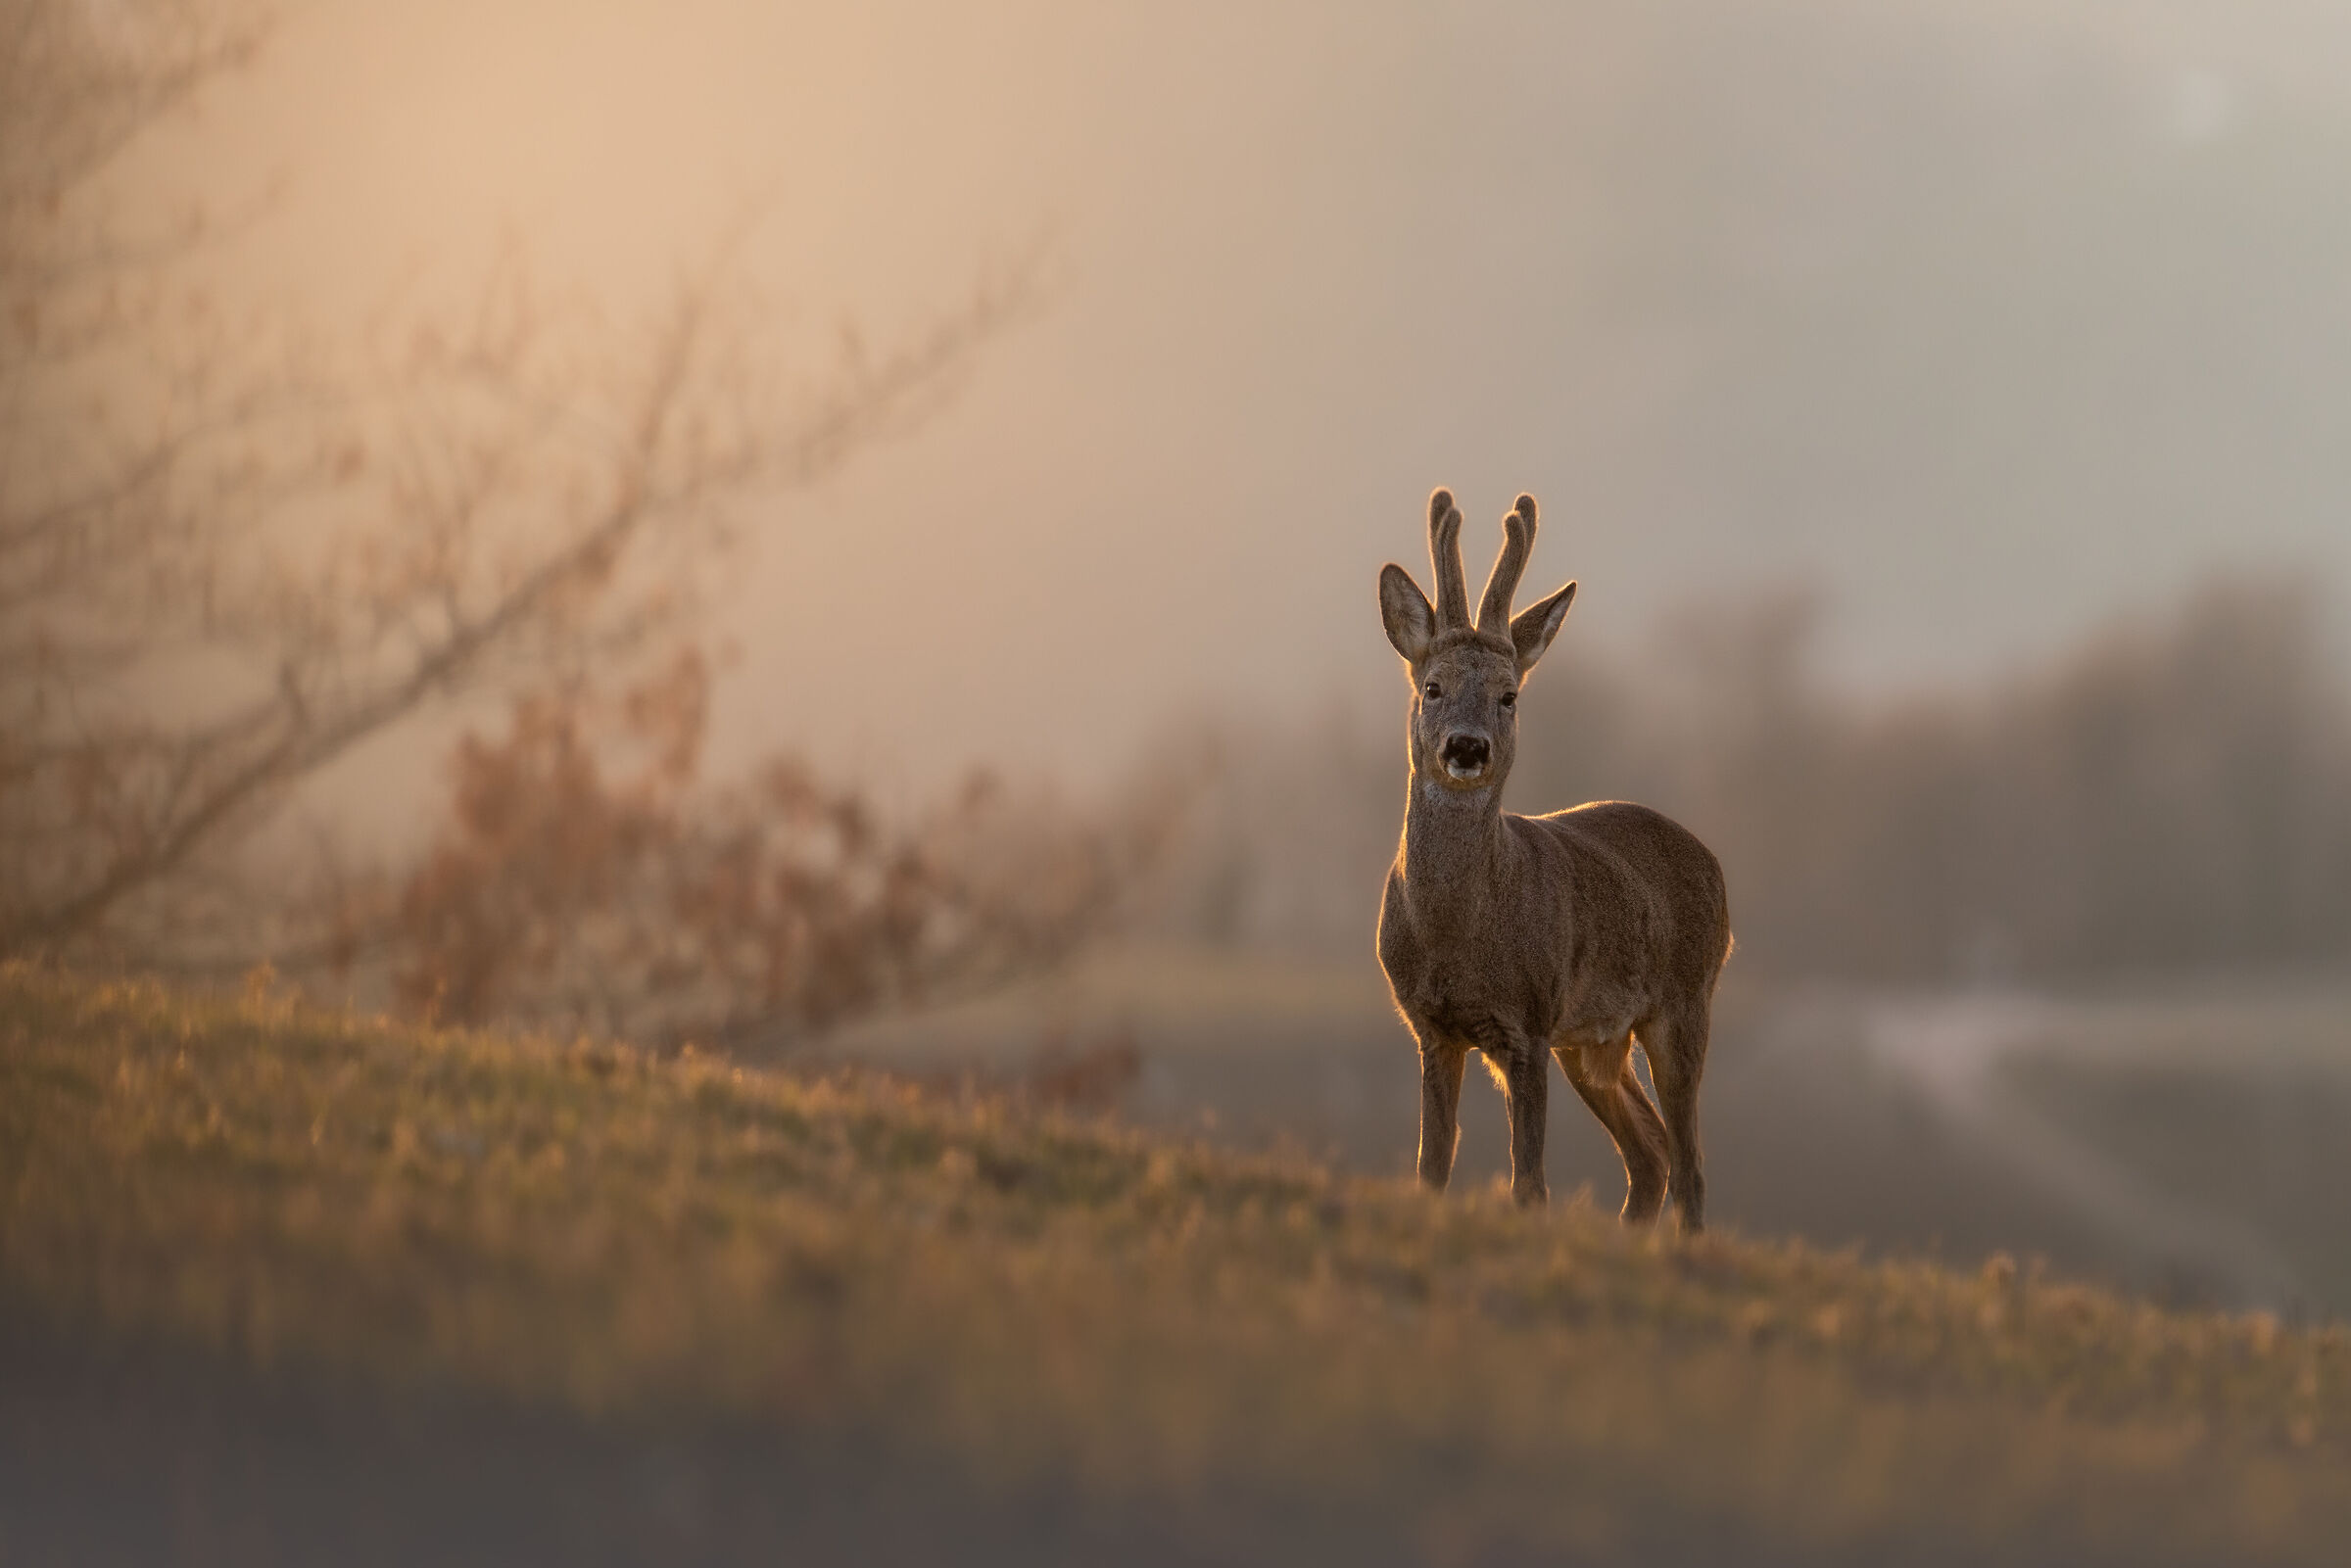 The golden roe deer...